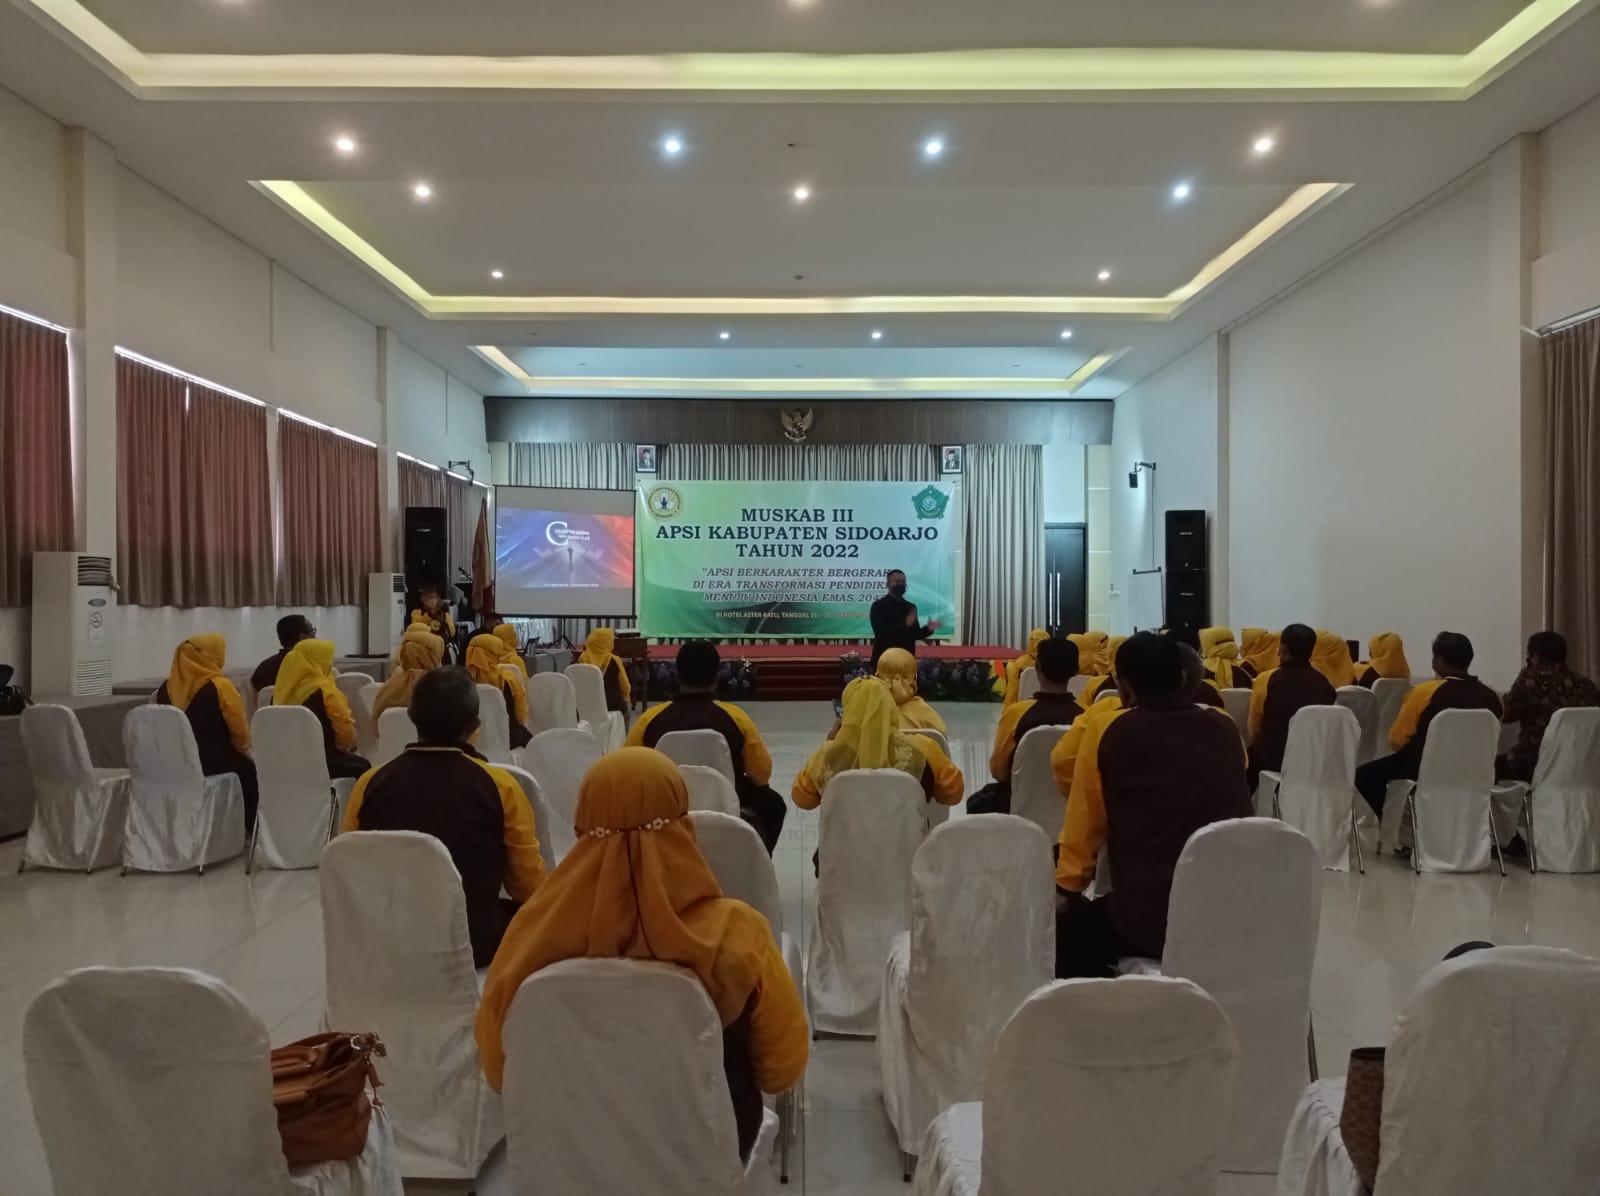 Muskab III APSI Kabupaten Sidoarjo, Panca Olah Institute Bersamai Para Pengawas Sekolah dalam Pelatihan Pendidikan Karakter dengan Metode Panca Olah